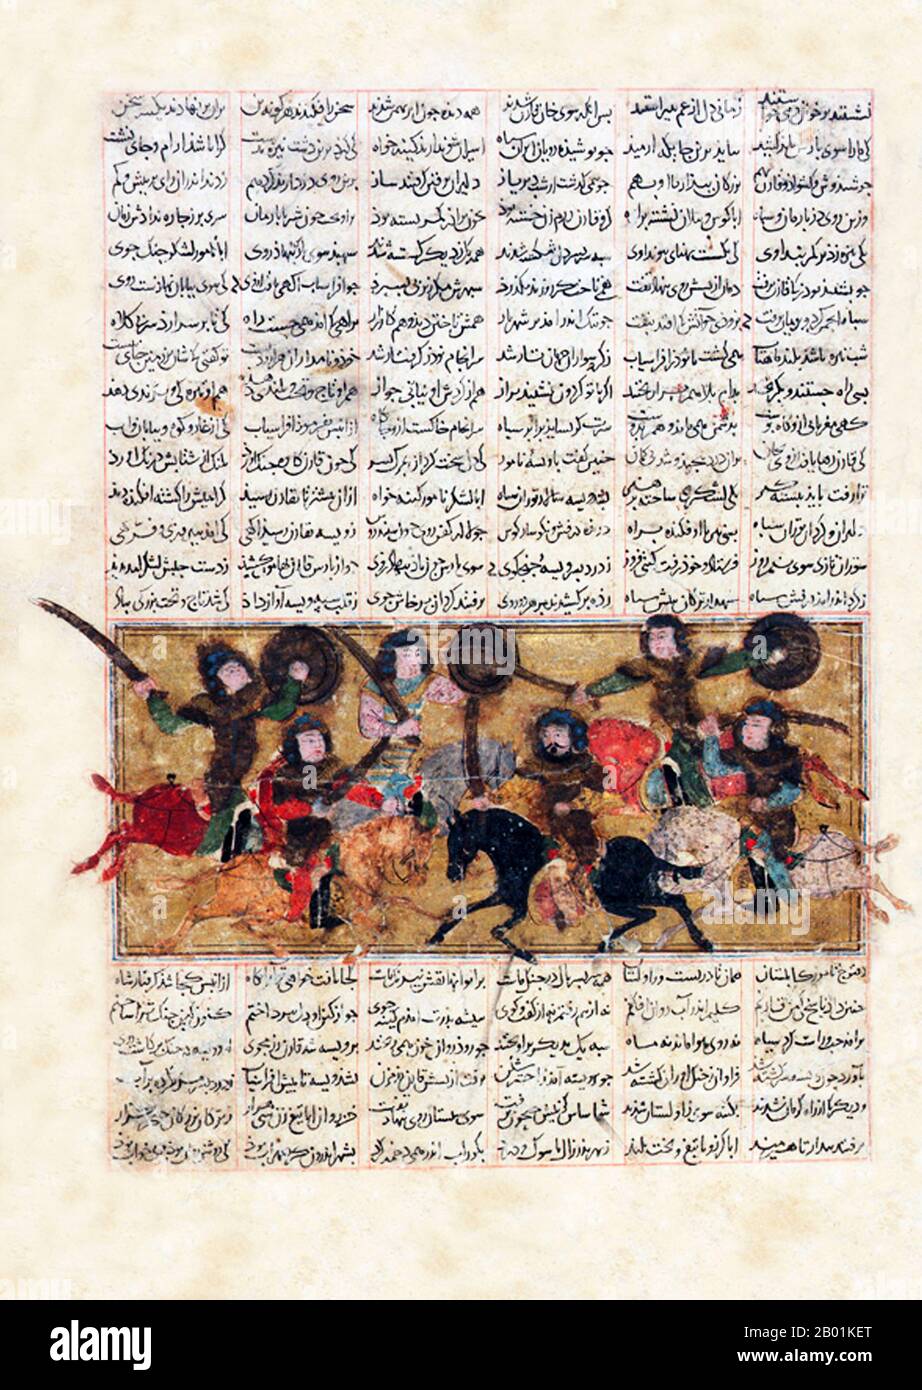 Iran/Persien: Ein Kampf zwischen den Streitkräften von Naudar und Afrasiyab. Folio aus dem Schahnameh, Anfang des 14. Jahrhunderts. Das Shahnameh oder Shah-nama (Šāhnāmeh, „das Buch der Könige“) ist ein langes episches Gedicht, das der persische Dichter Ferdowsi zwischen 977 und 1010 n. Chr. geschrieben hat und das nationale Epos des Iran und verwandter perso-iranischer Kulturen ist. Der Schahnameh besteht aus etwa 60.000 Versen und erzählt die mythische und in gewissem Maße die historische Vergangenheit des Großirans von der Erschaffung der Welt bis zur islamischen Eroberung Persiens im 7. Jahrhundert. Stockfoto